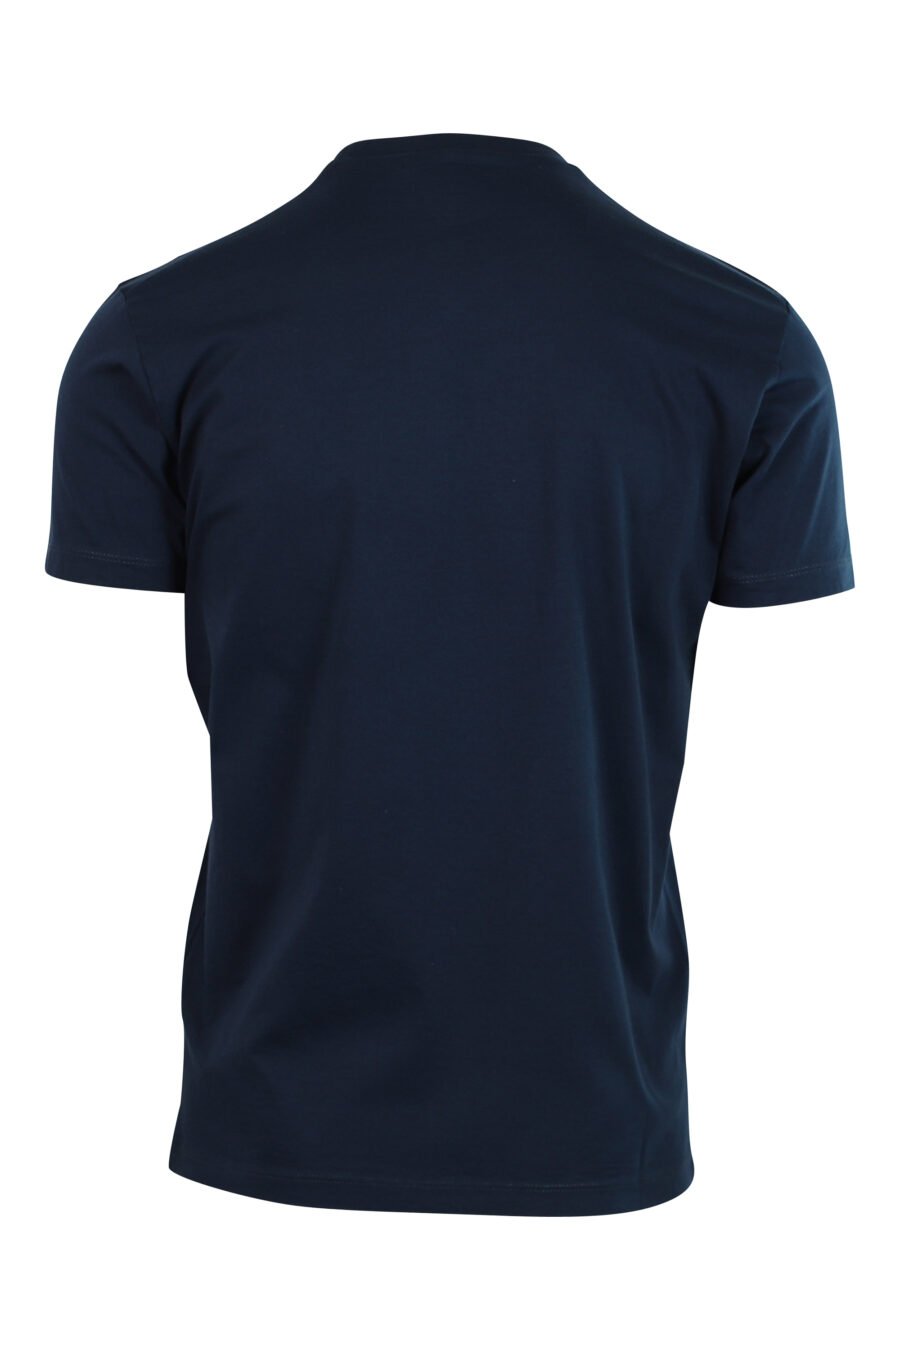 T-shirt bleu foncé avec mini-logo rouge dans un graphique de feuilles - 8054148046569 2